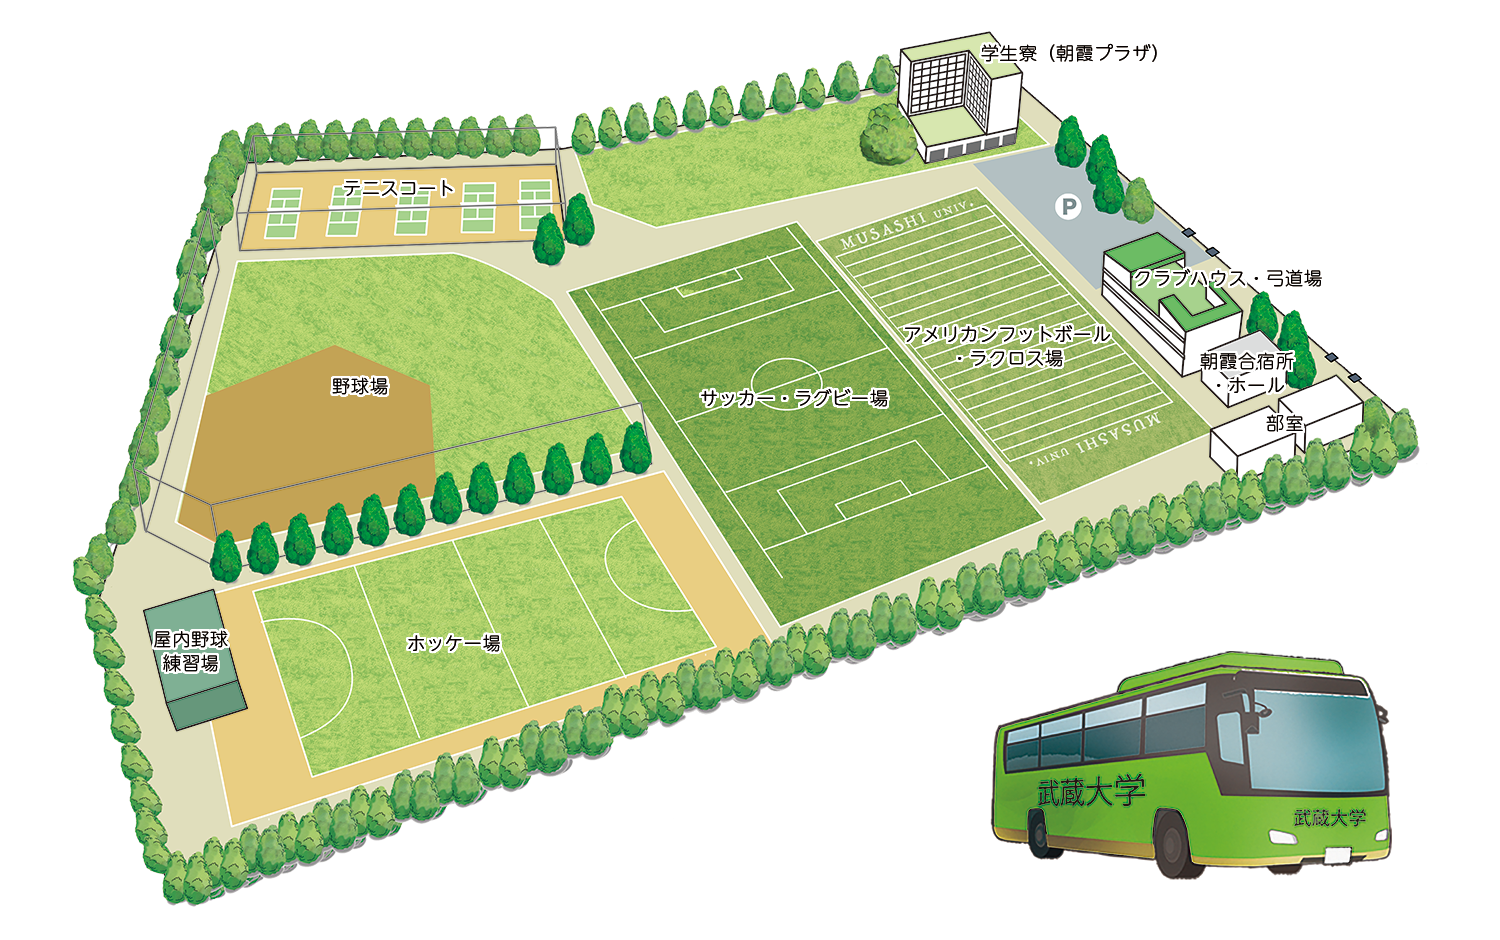 武蔵大学のスポーツ施設